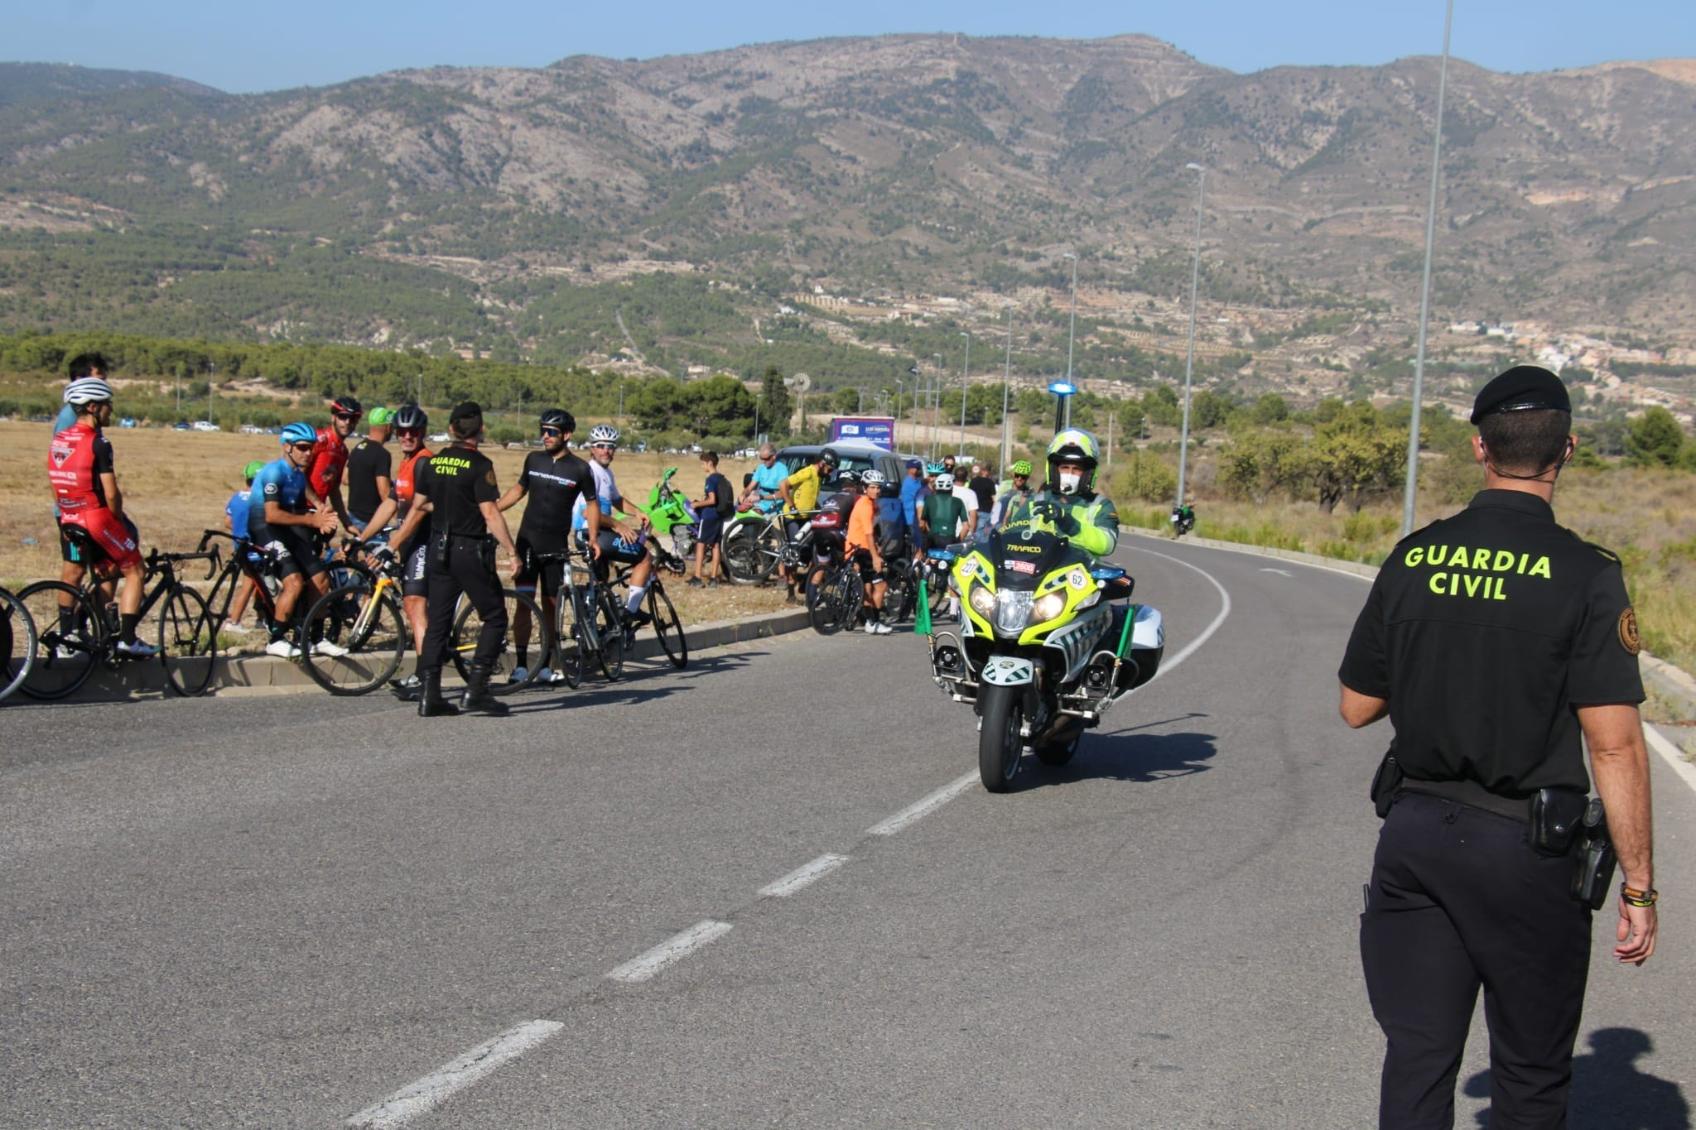 La Guardia Civil inicia el dispositivo de seguridad de la 77ª edición de la Vuelta Ciclista a España 2022